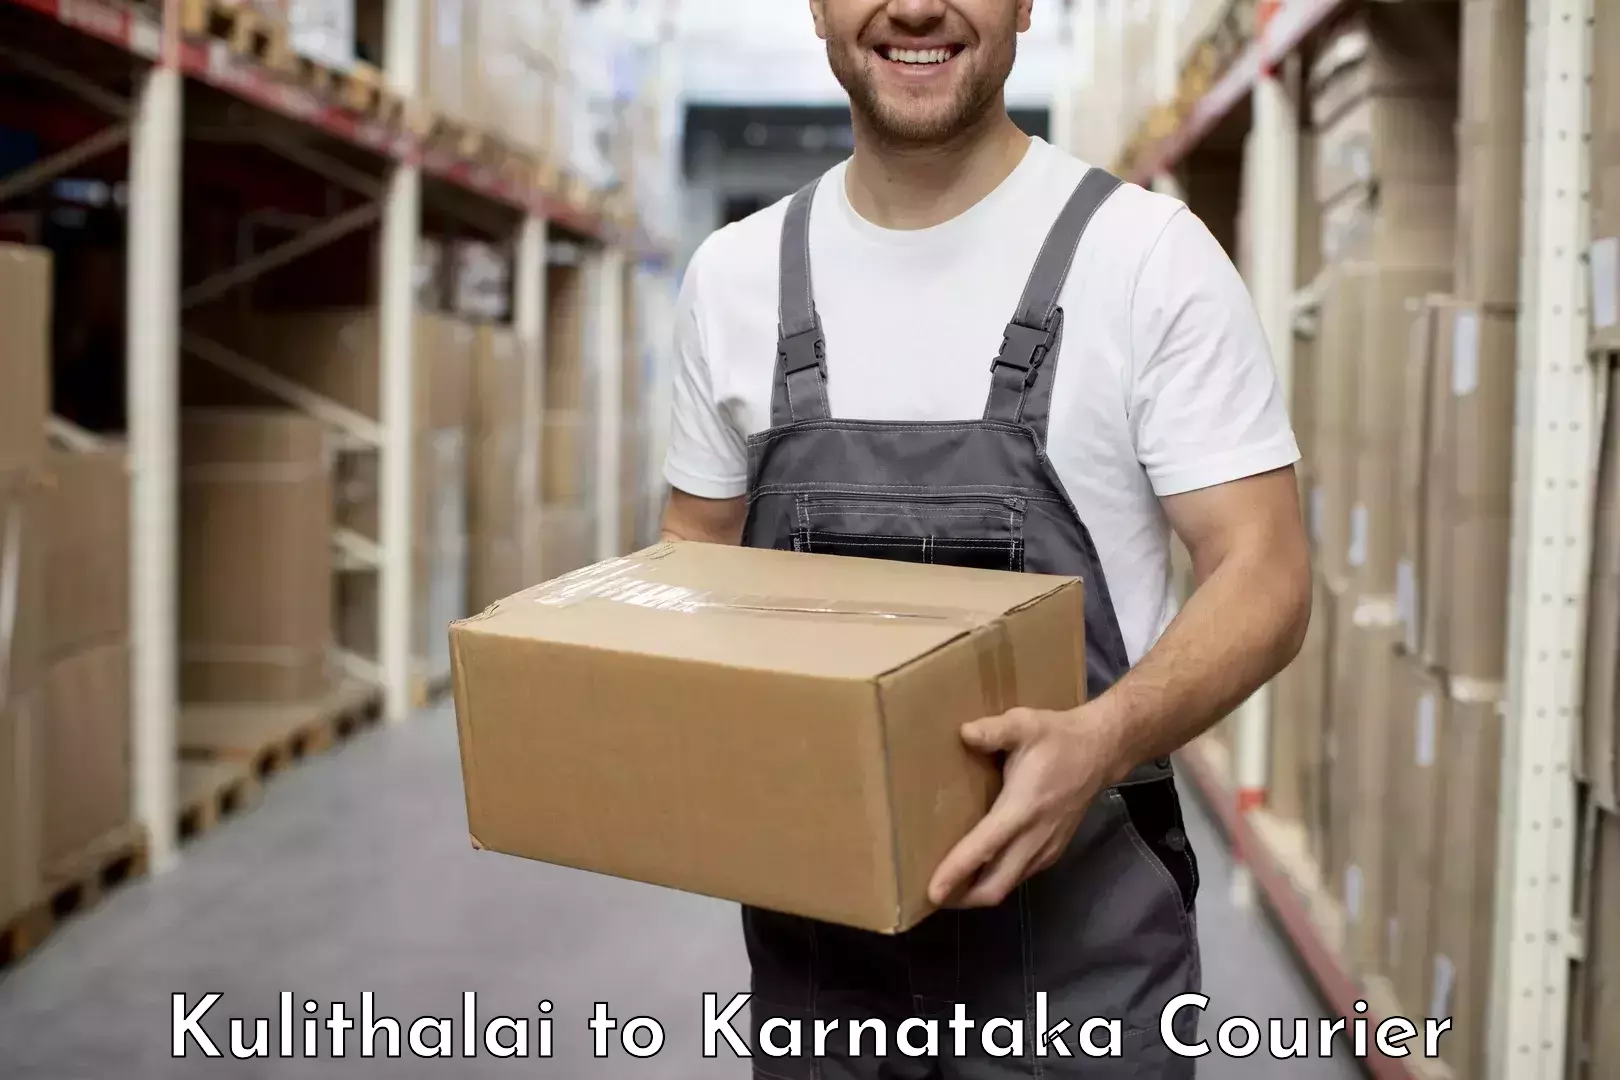 Premium courier solutions Kulithalai to Karnataka